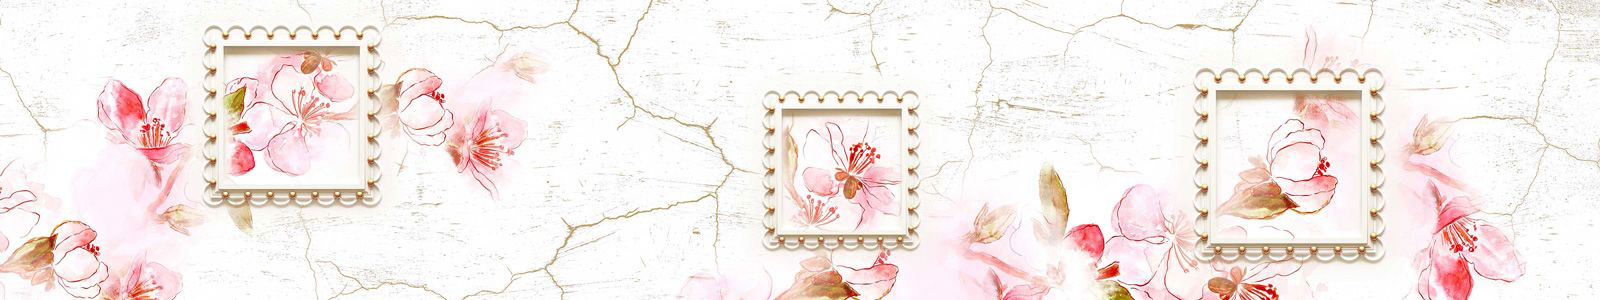 №6698 - Рисунок цветущего миндаля на фоне стены с трещинами